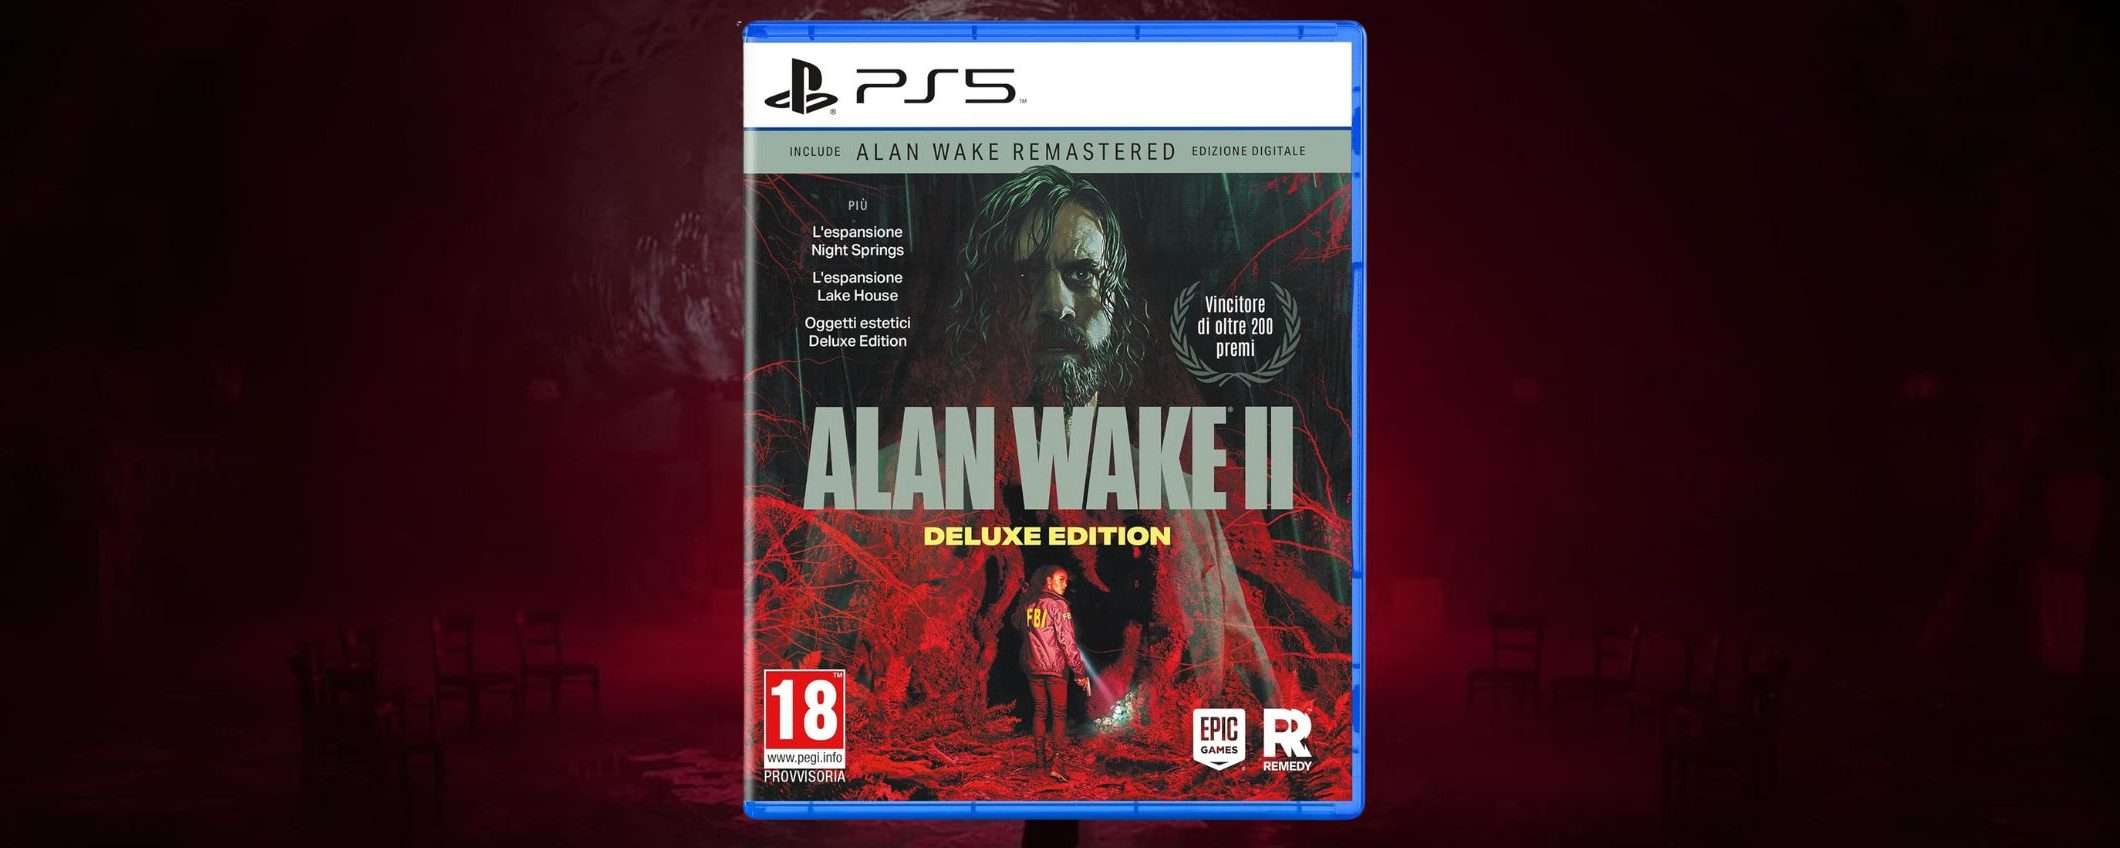 Alan Wake 2 Deluxe Edition: prenotalo su Amazon al MIGLIOR PREZZO garantito